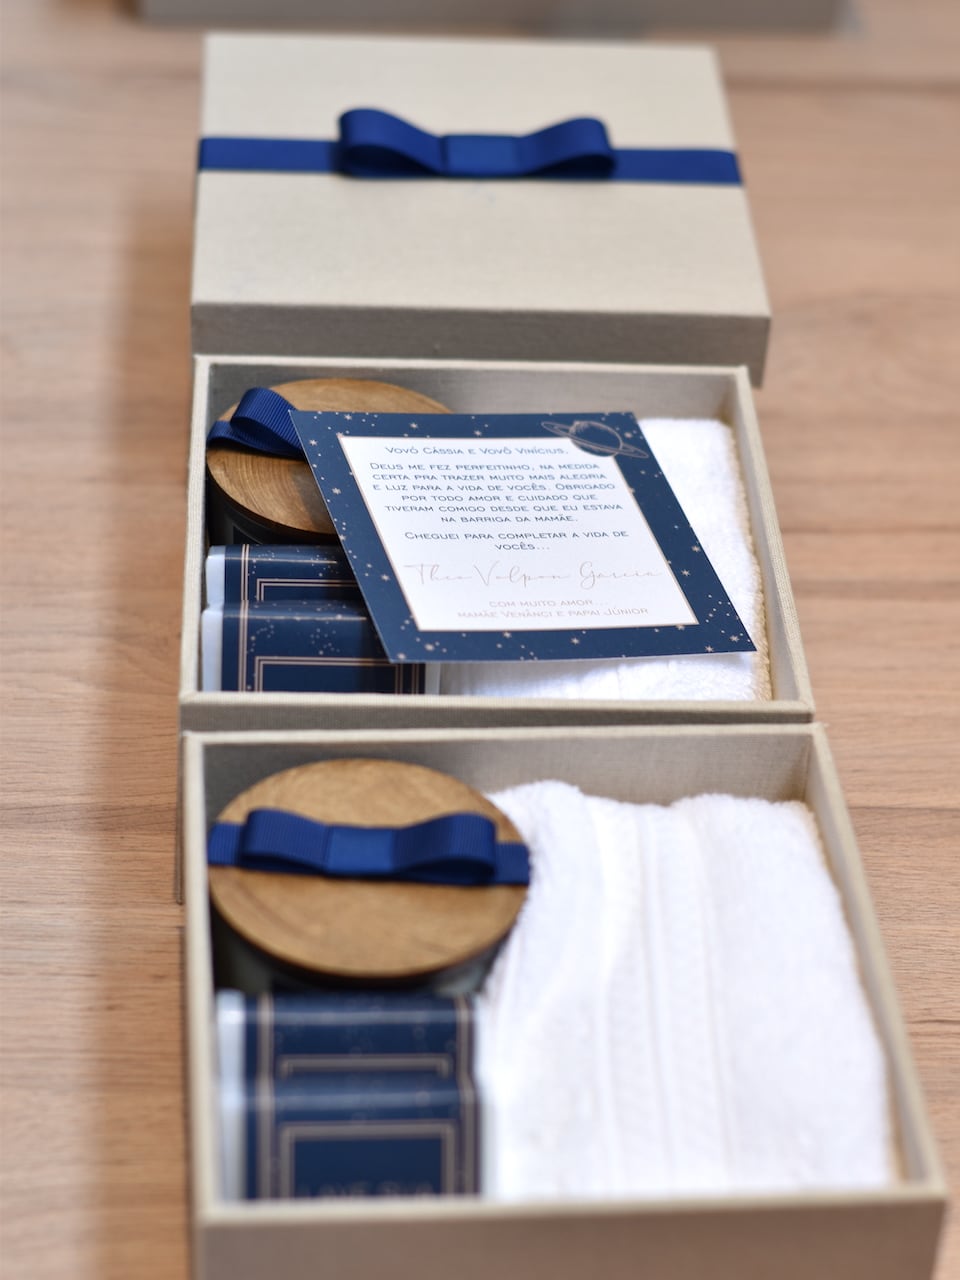 3 caixas personalizadas forradas de kits Petit I com convite, sabonetes, vela e toalha